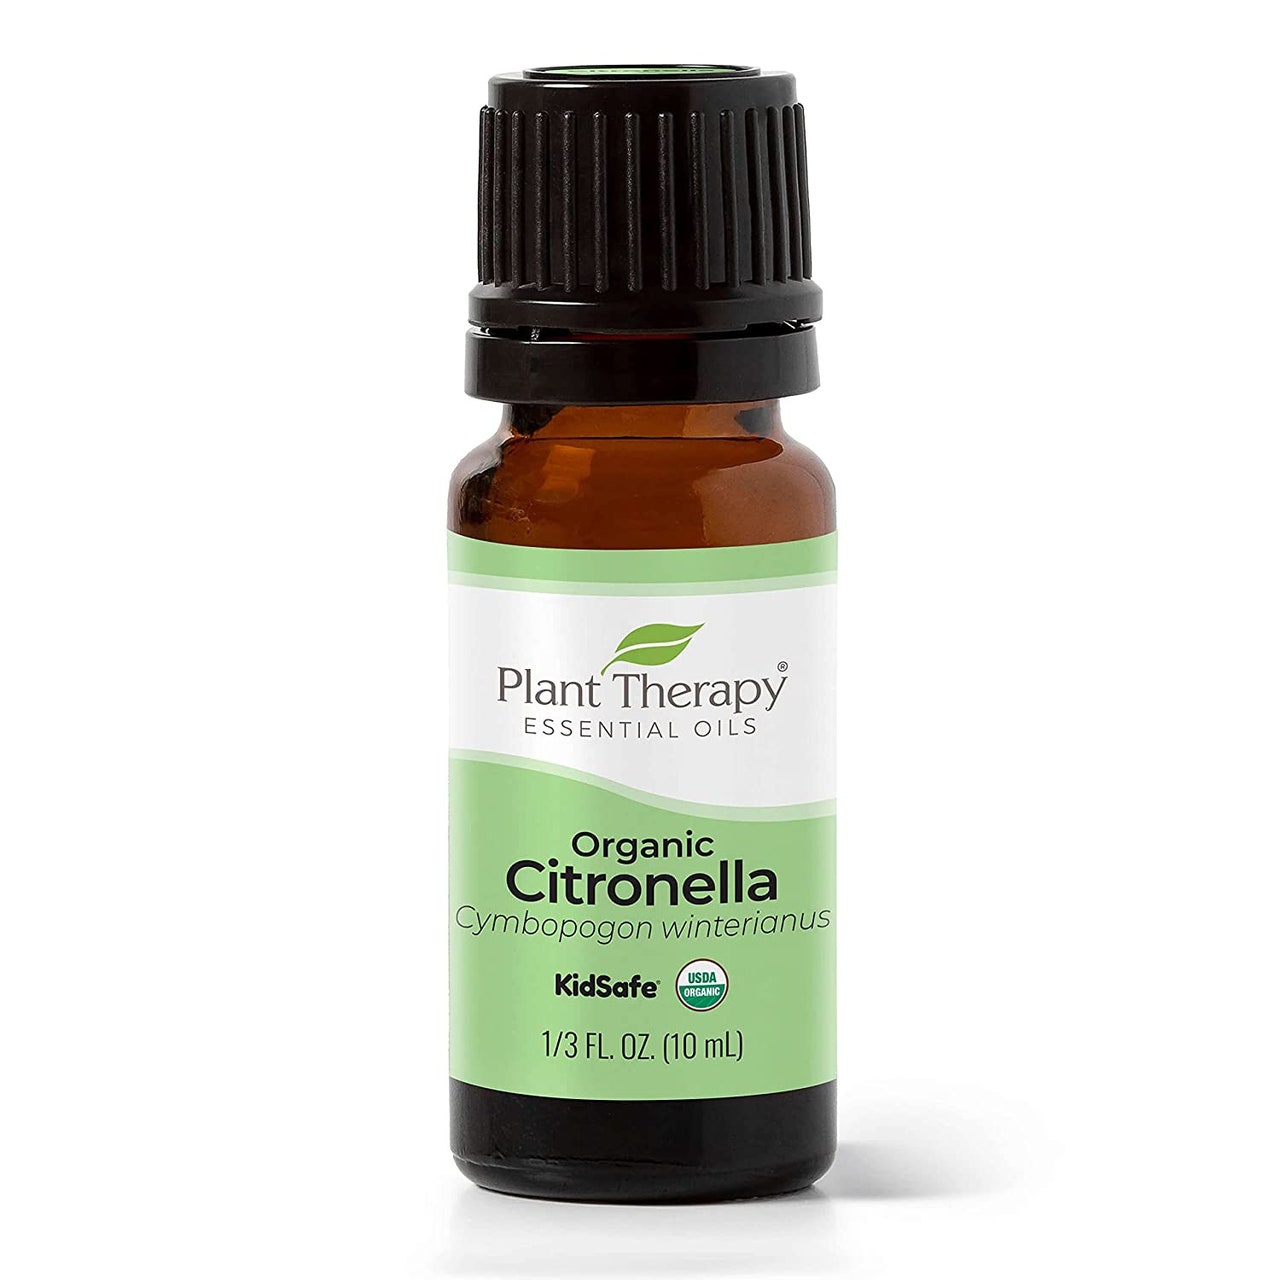 Pflanzentherapie-ätherische Öle Bio-Citronella-braune Flasche mit grünem und weißem Etikett und schwarzem Verschluss auf weißem Hintergrund